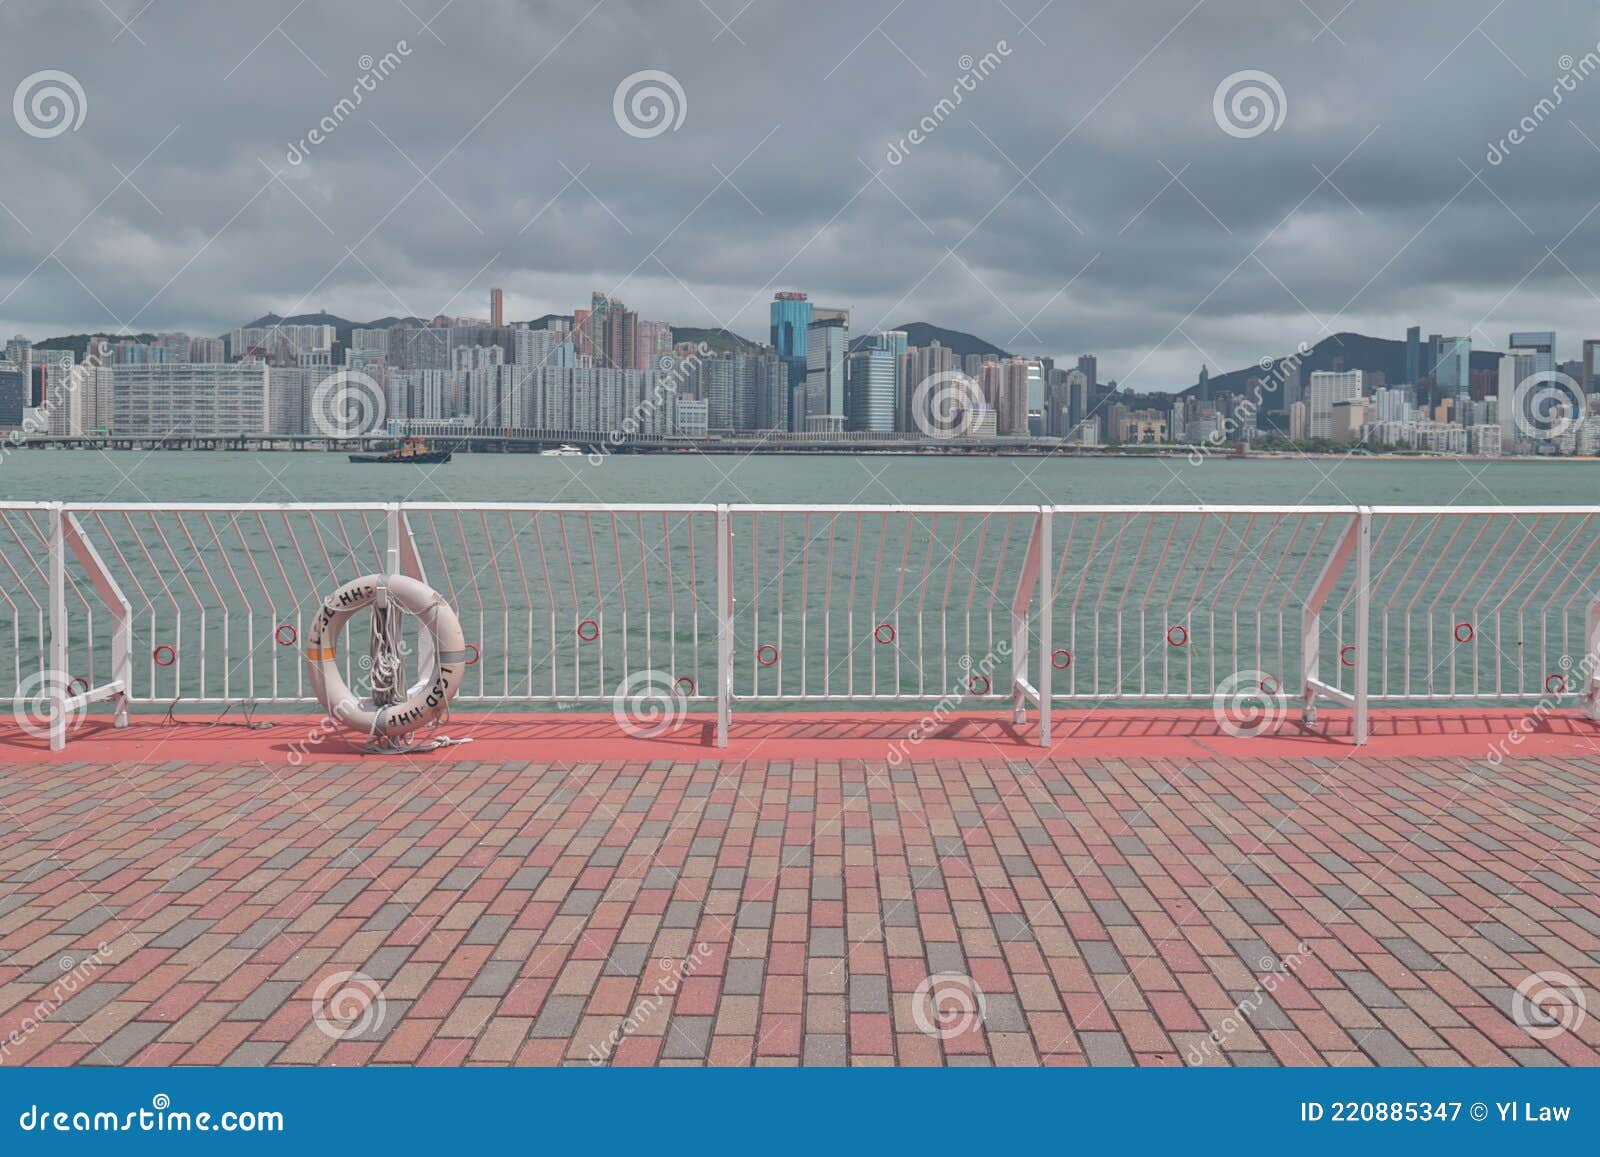 香港島の東區走廊の道路と高層ビル群の風景 | 香港の写真素材なら SnapHouse HK ～香港写真素材屋～